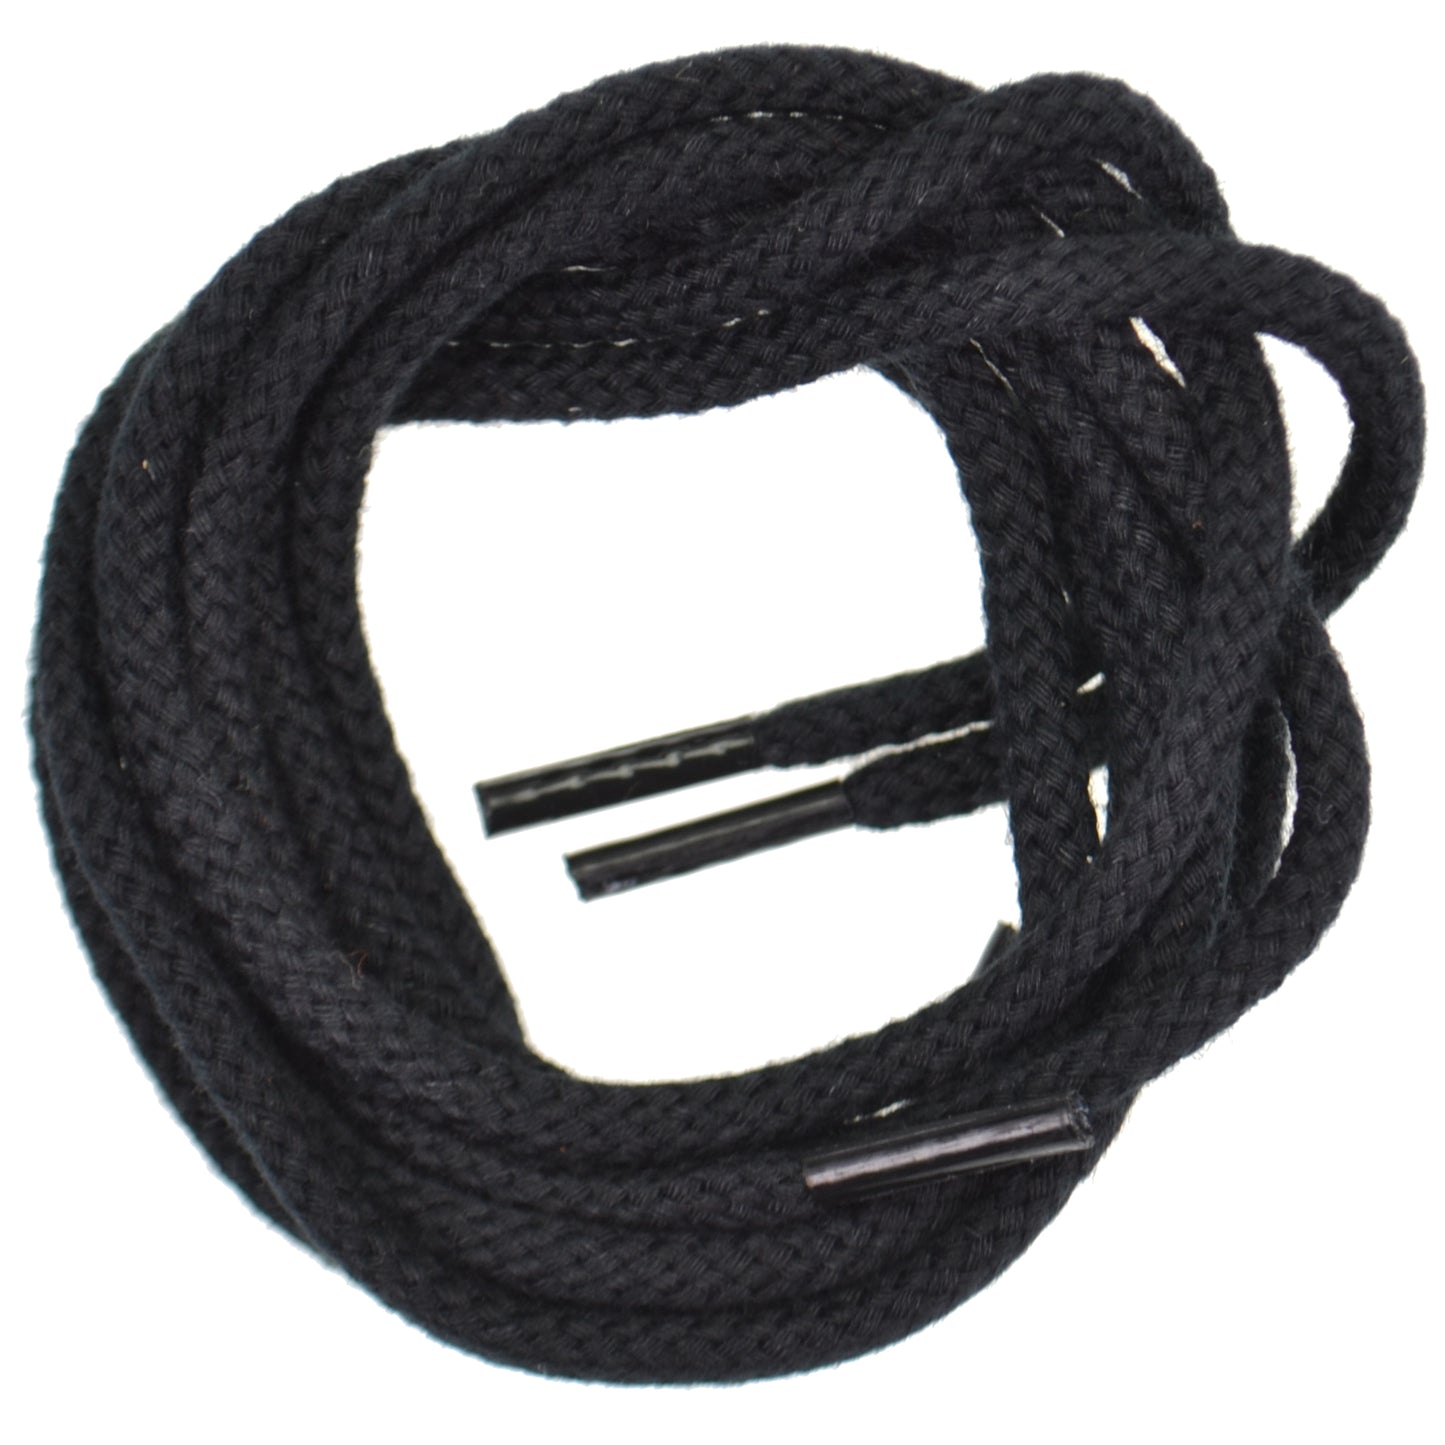 120cm Cord Shoe Laces - Black 4mm